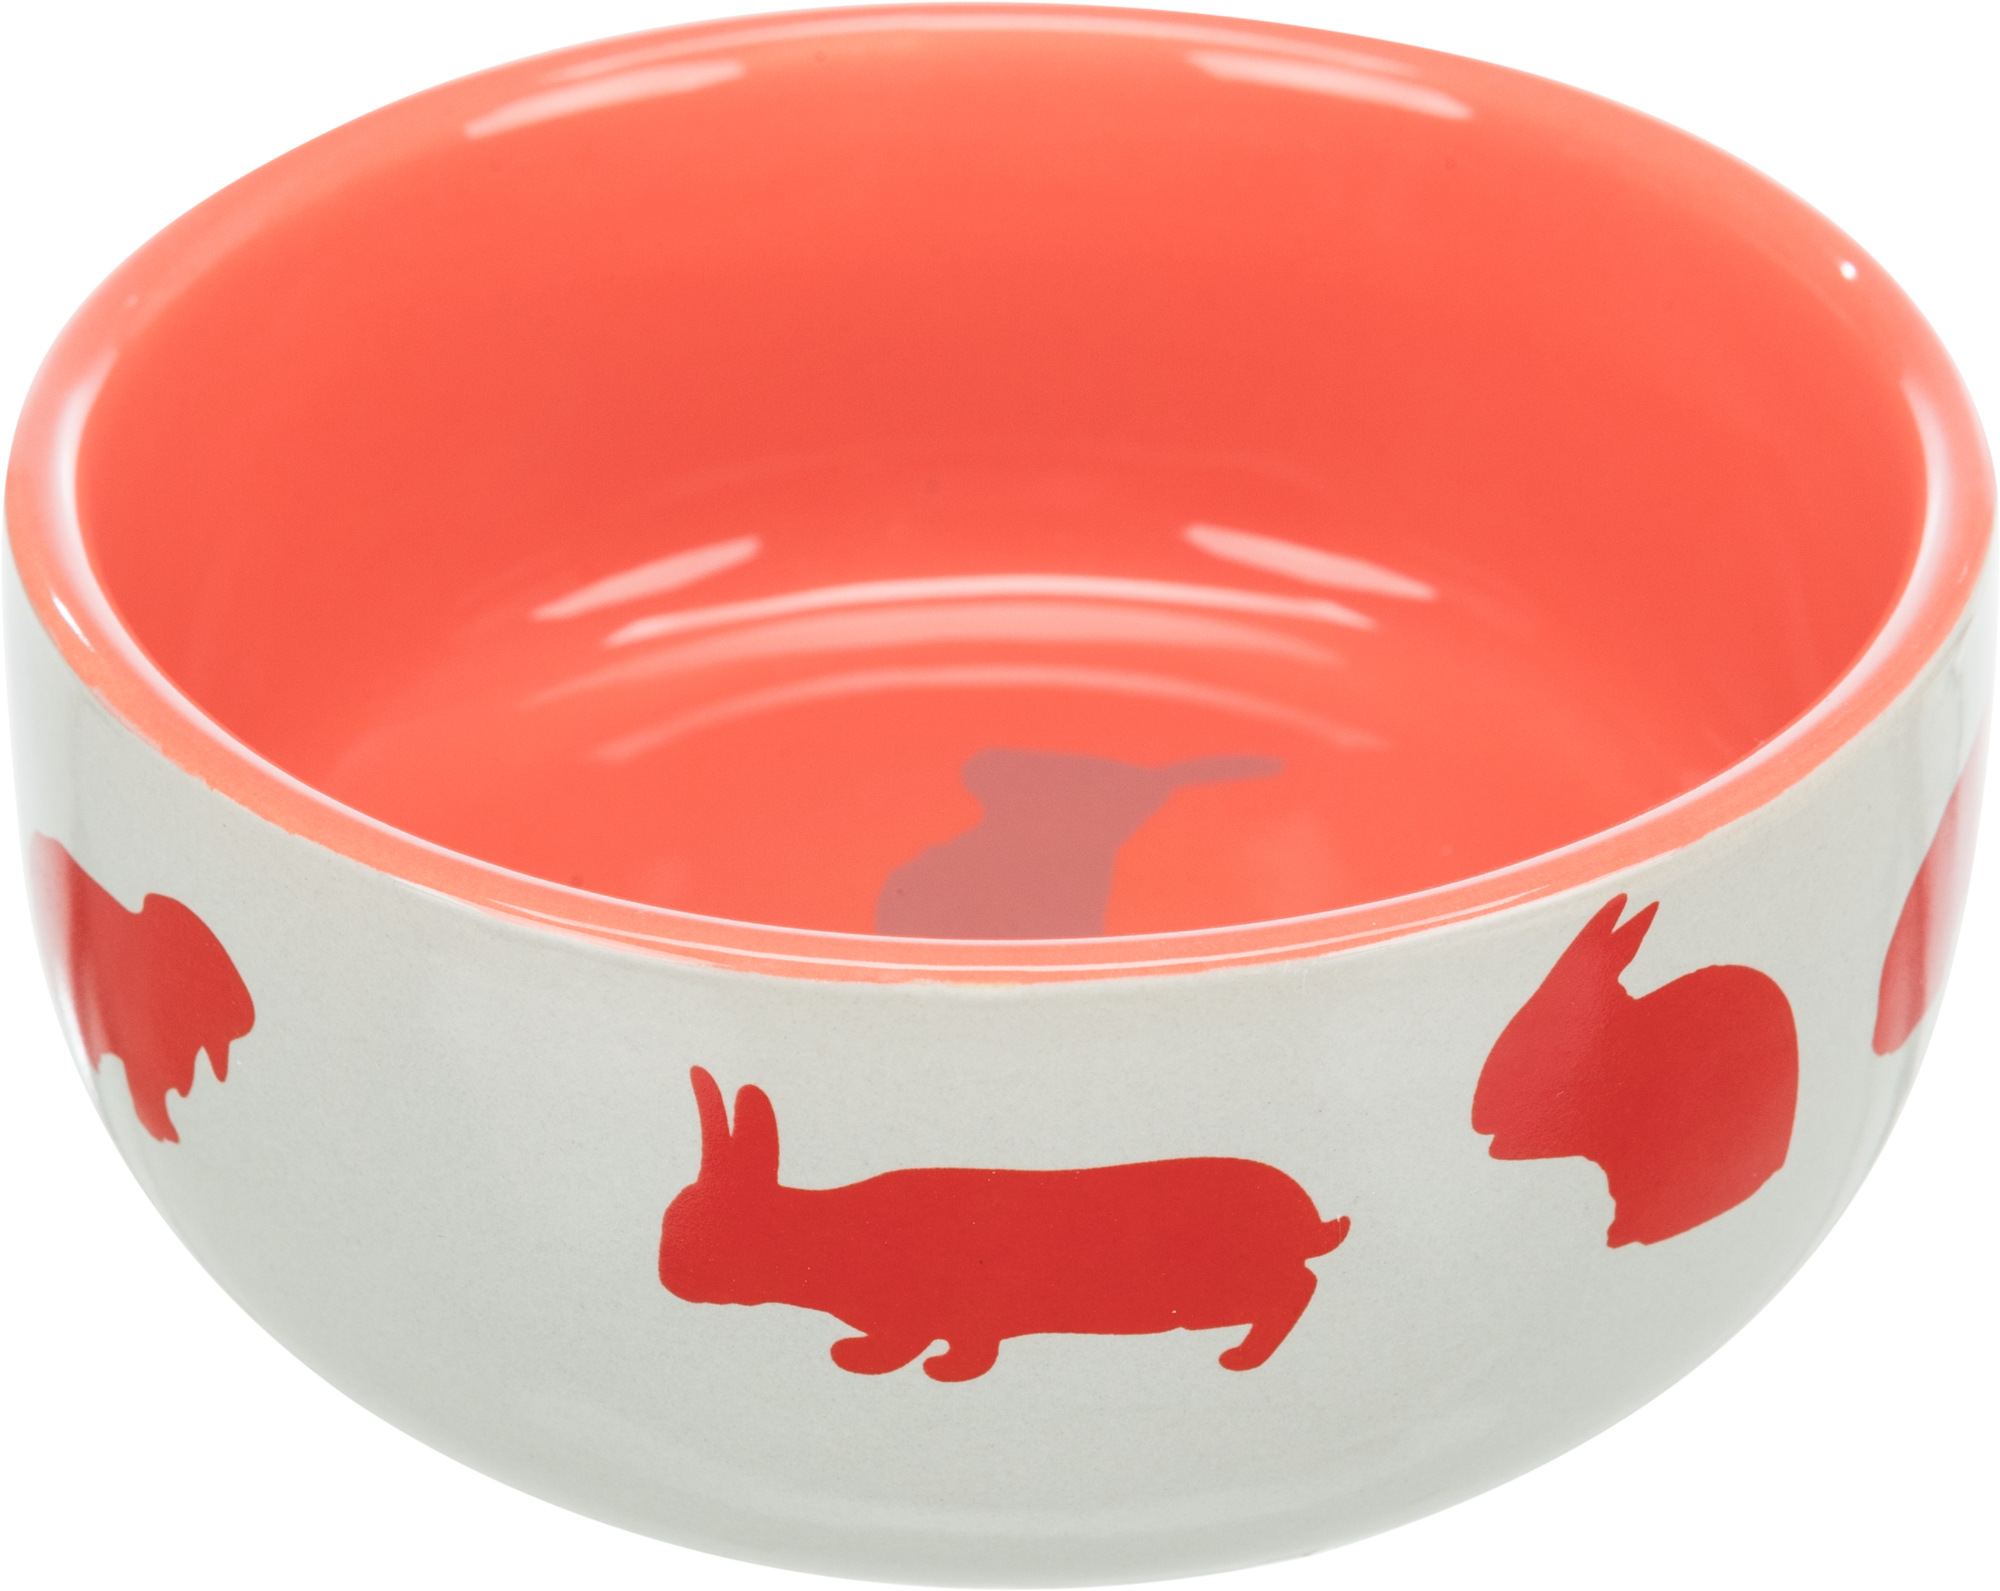 Rabbit bowl